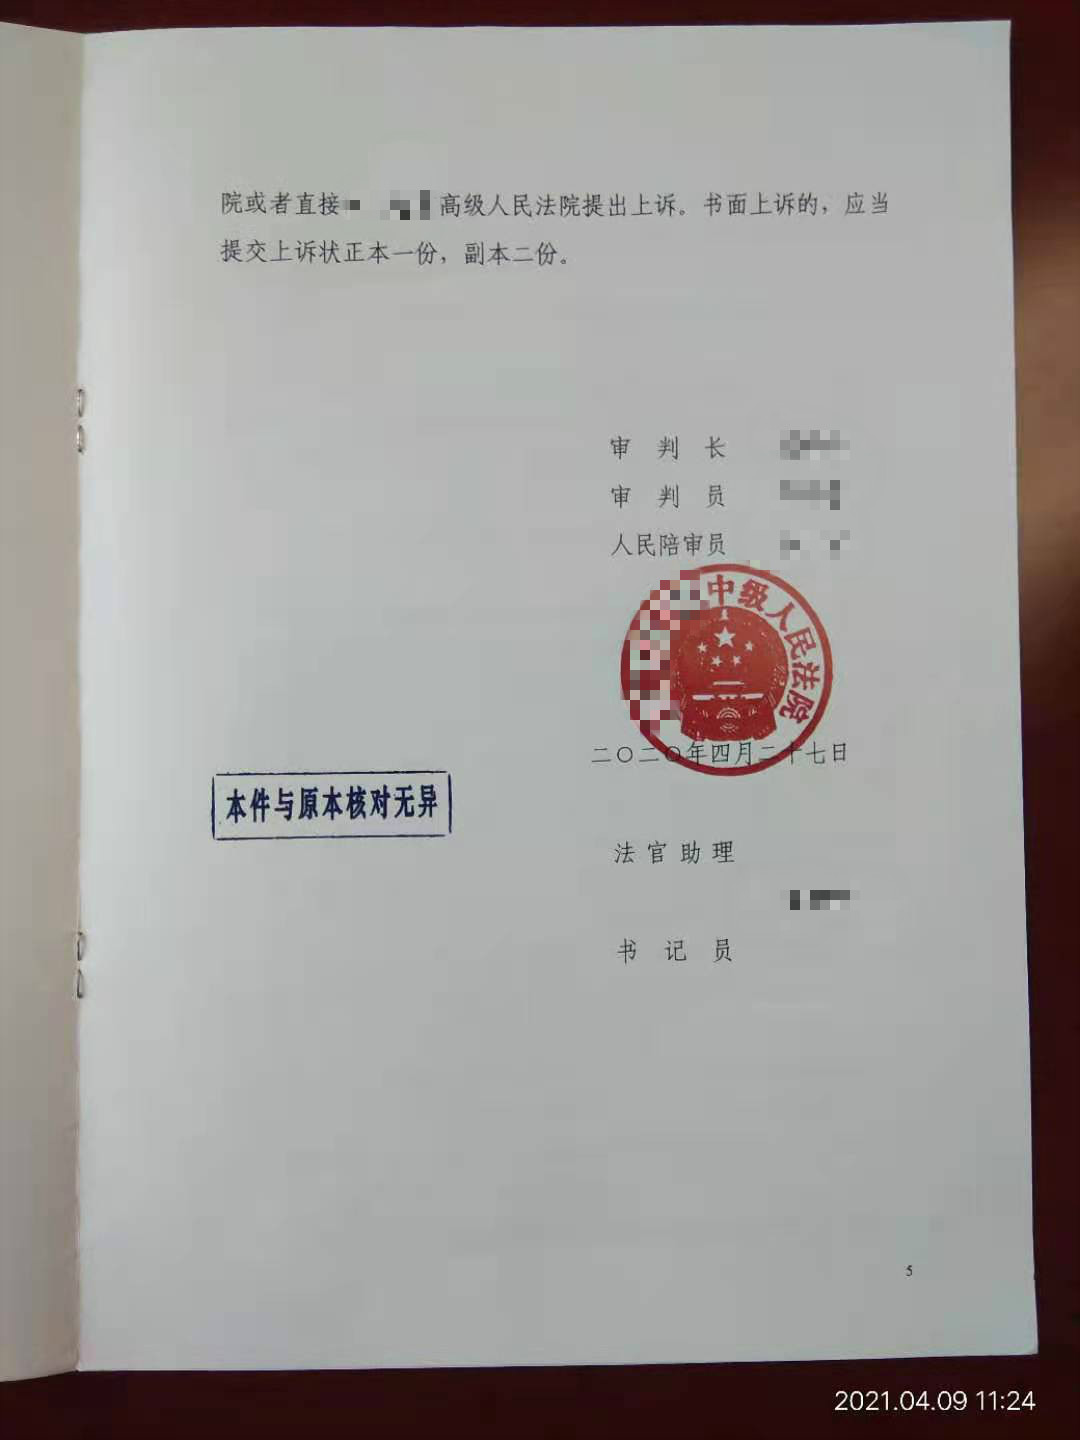 上海峰京律师事务所张严锋律师办理某海关缉私走私（电子烟弹）案，法院判处一年缓刑